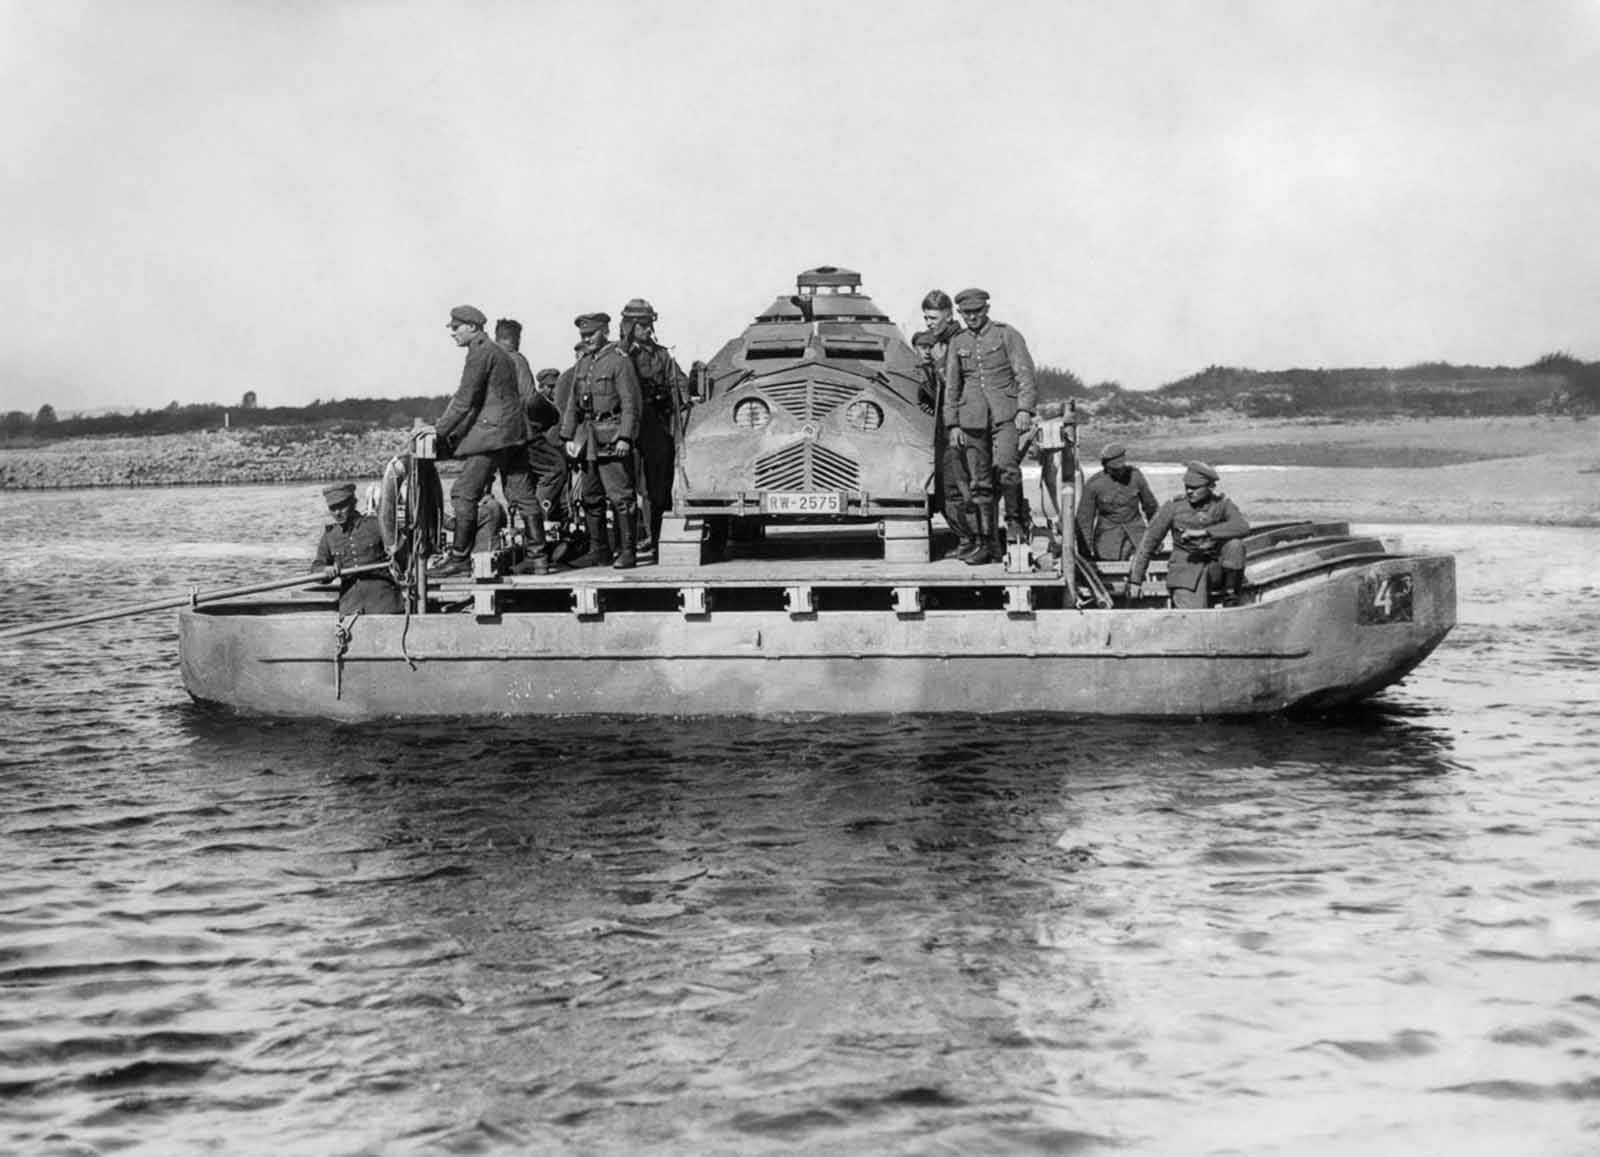 Le mannequin gonflable réservoirs de champs de bataille, 1918-1945